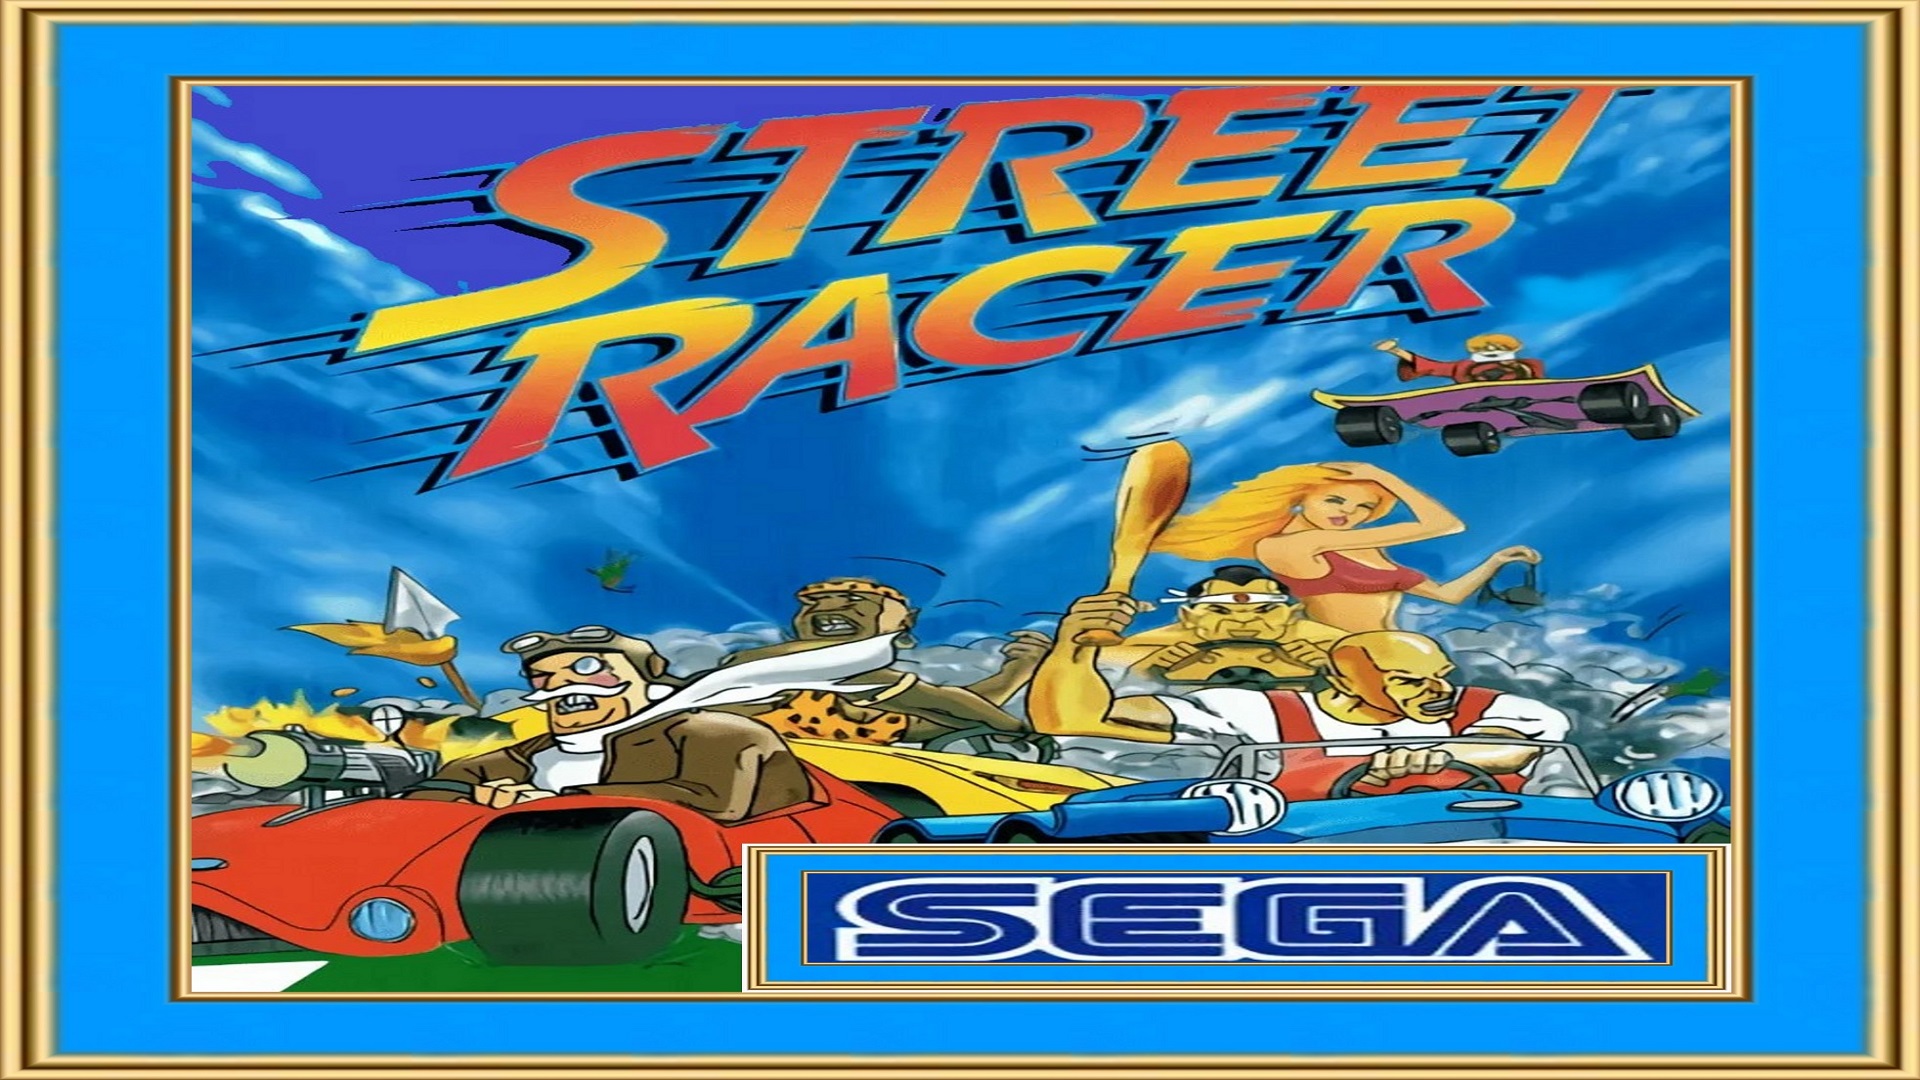 Street Racer / SEGA / Прохождение на трудном уровне сложности.